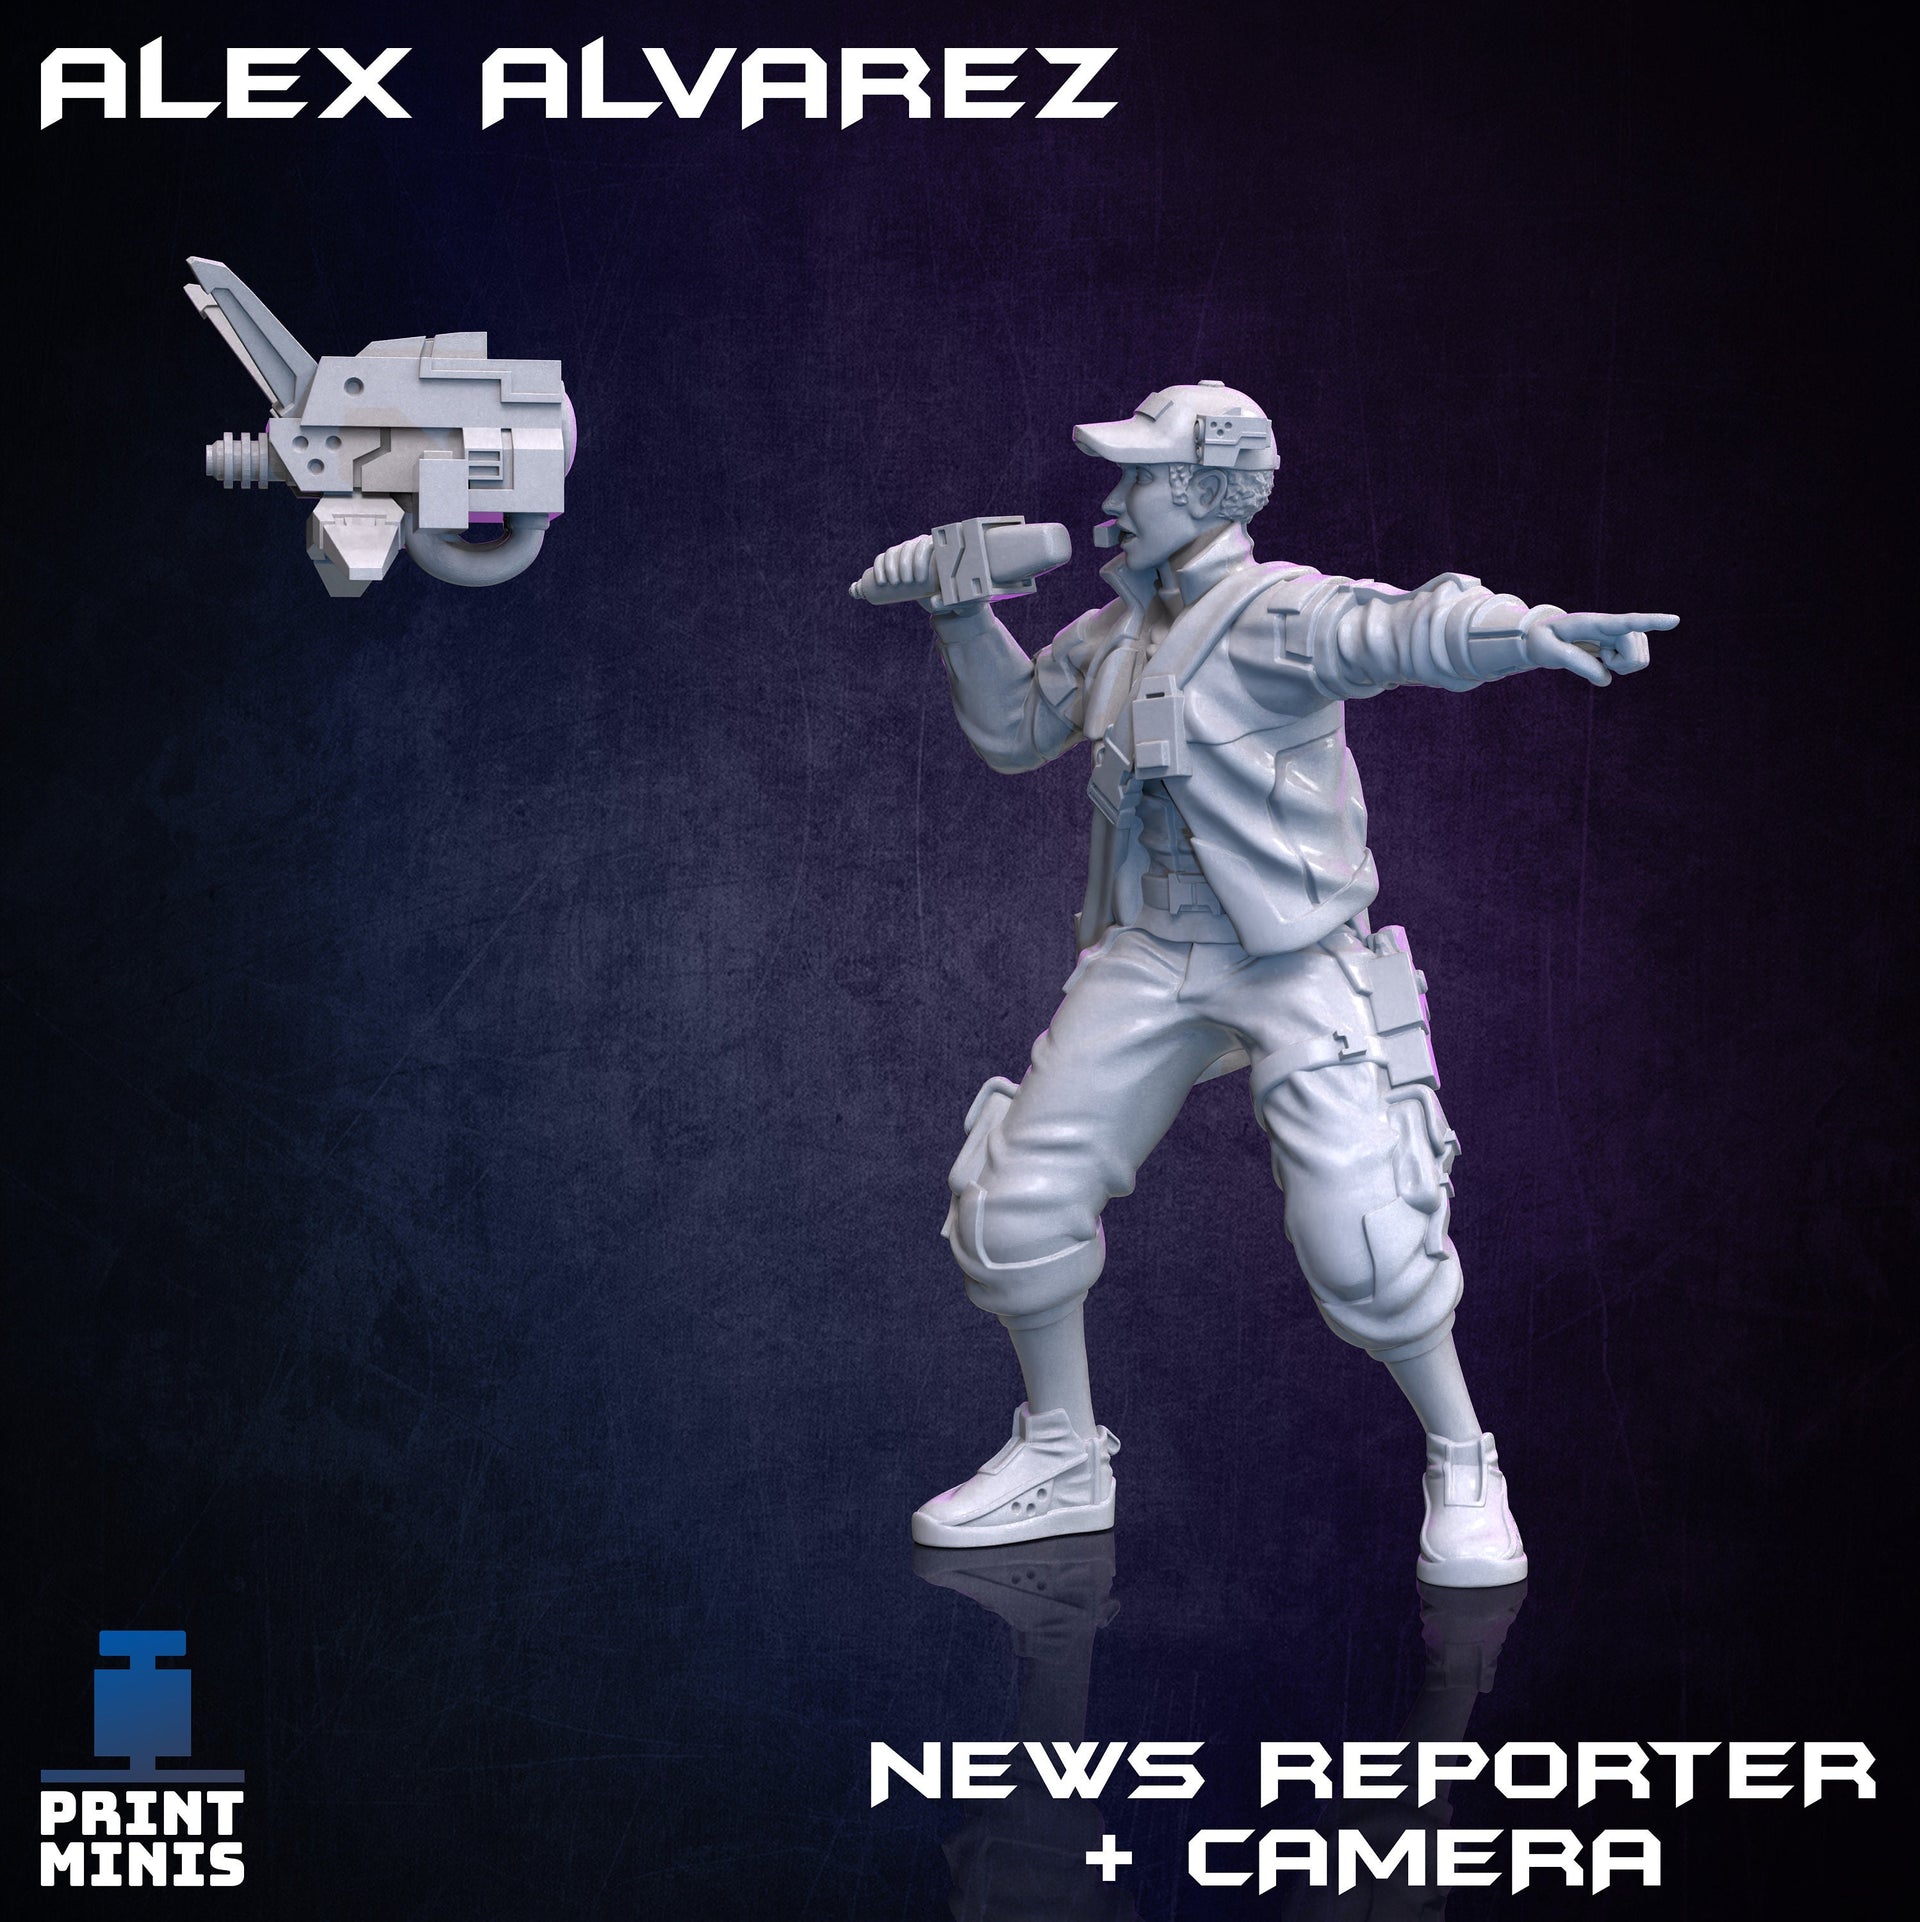 Alex Alvarez, News Reporter + Camera - Print Minis 